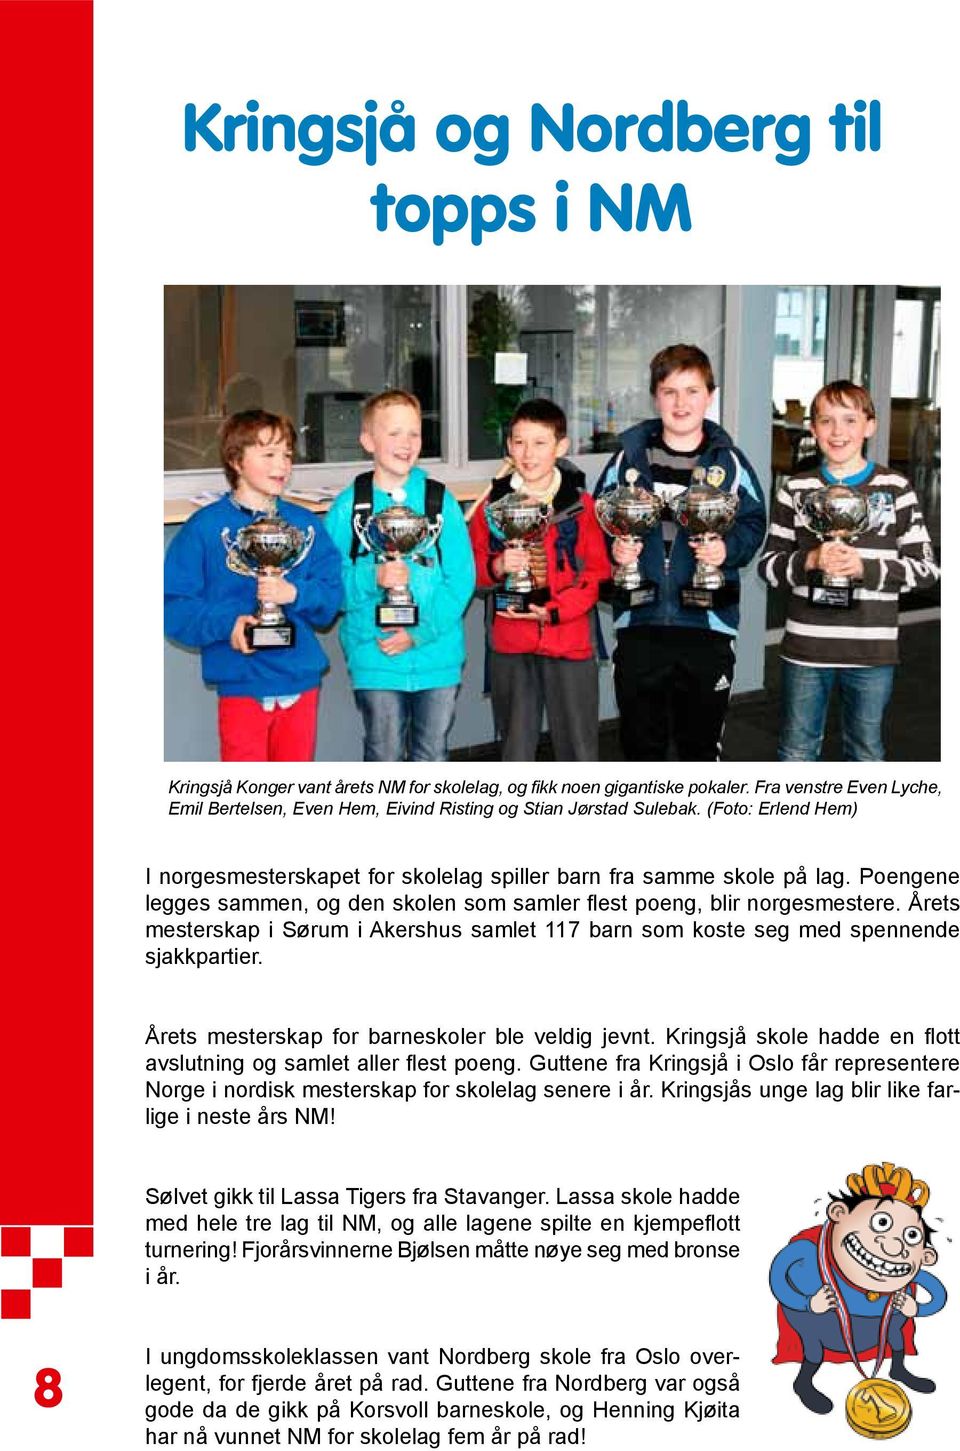 Poengene legges sammen, og den skolen som samler flest poeng, blir norgesmestere. Årets mesterskap i Sørum i Akershus samlet 117 barn som koste seg med spennende sjakkpartier.